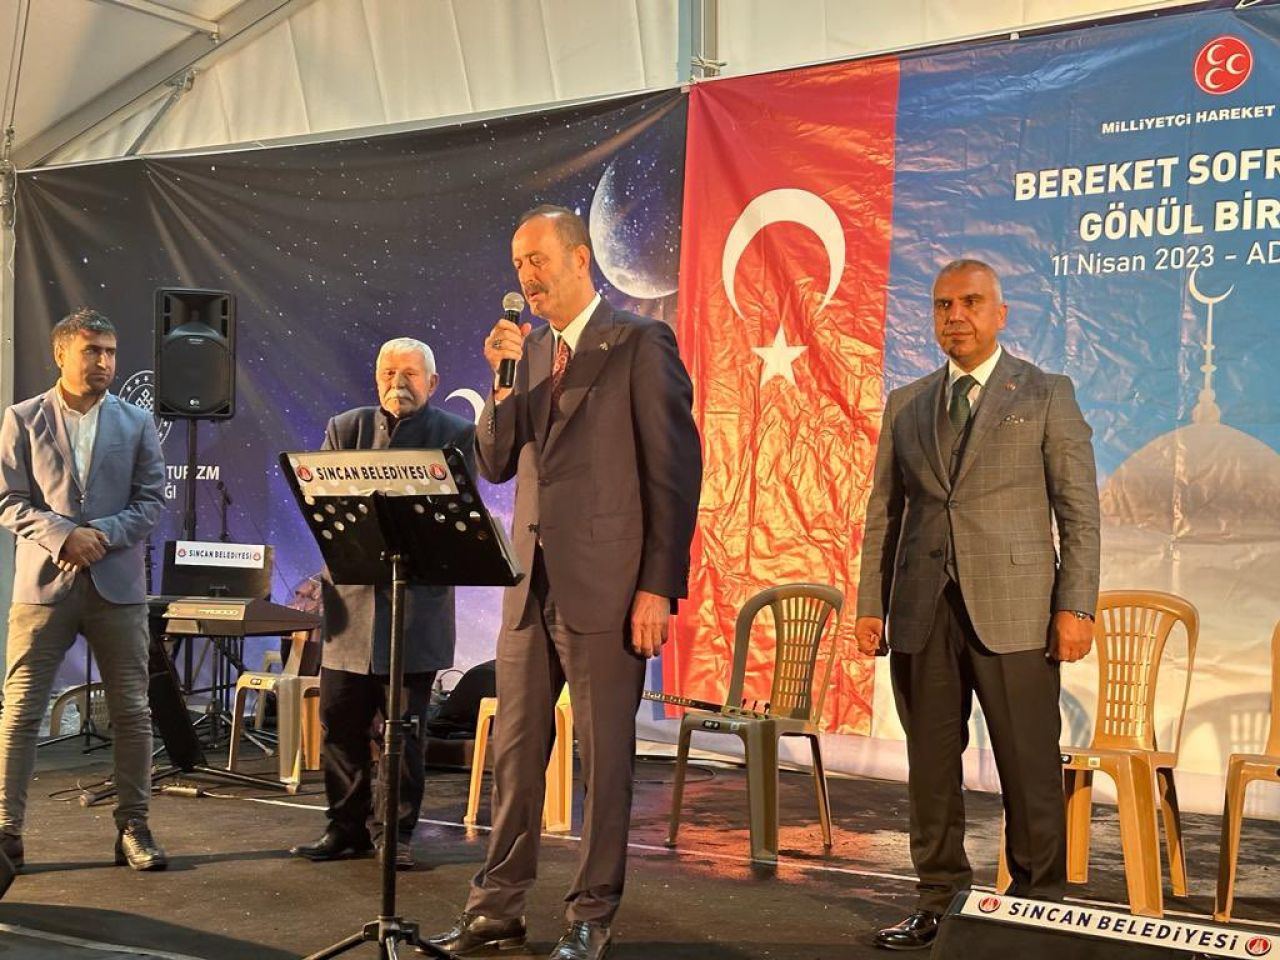 MHP'li Osmanağaoğlu, "Bereket Sofrasında Gönül Birliği” temalı Adıyaman’da düzenlenen iftar programına katıldı